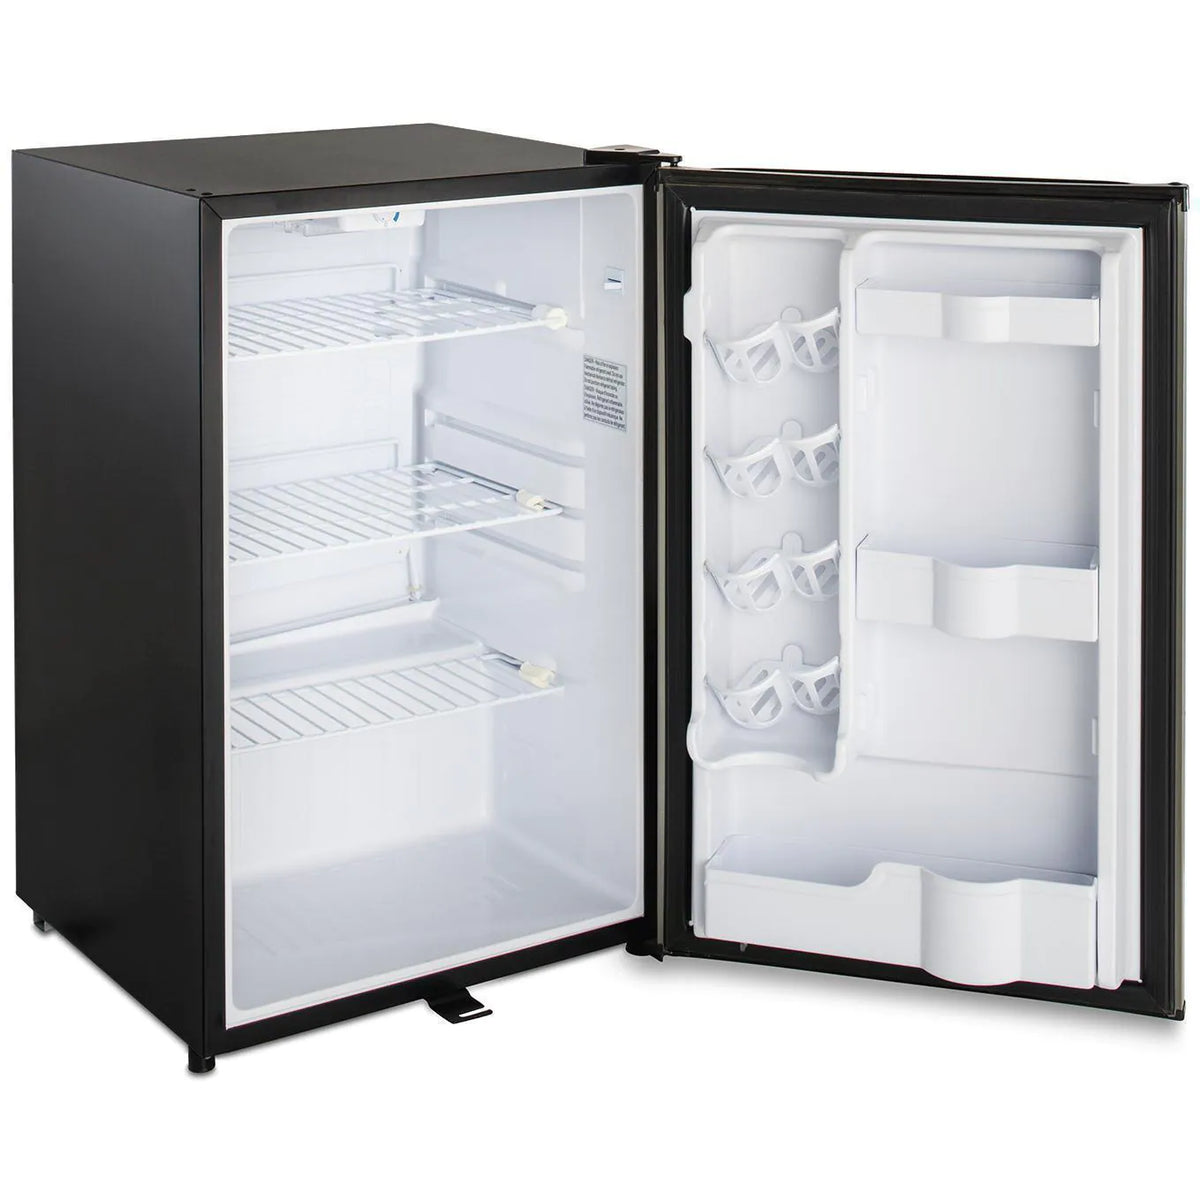 Blaze 20 Inch Outdoor Compact Refrigerator Side View with Door Open